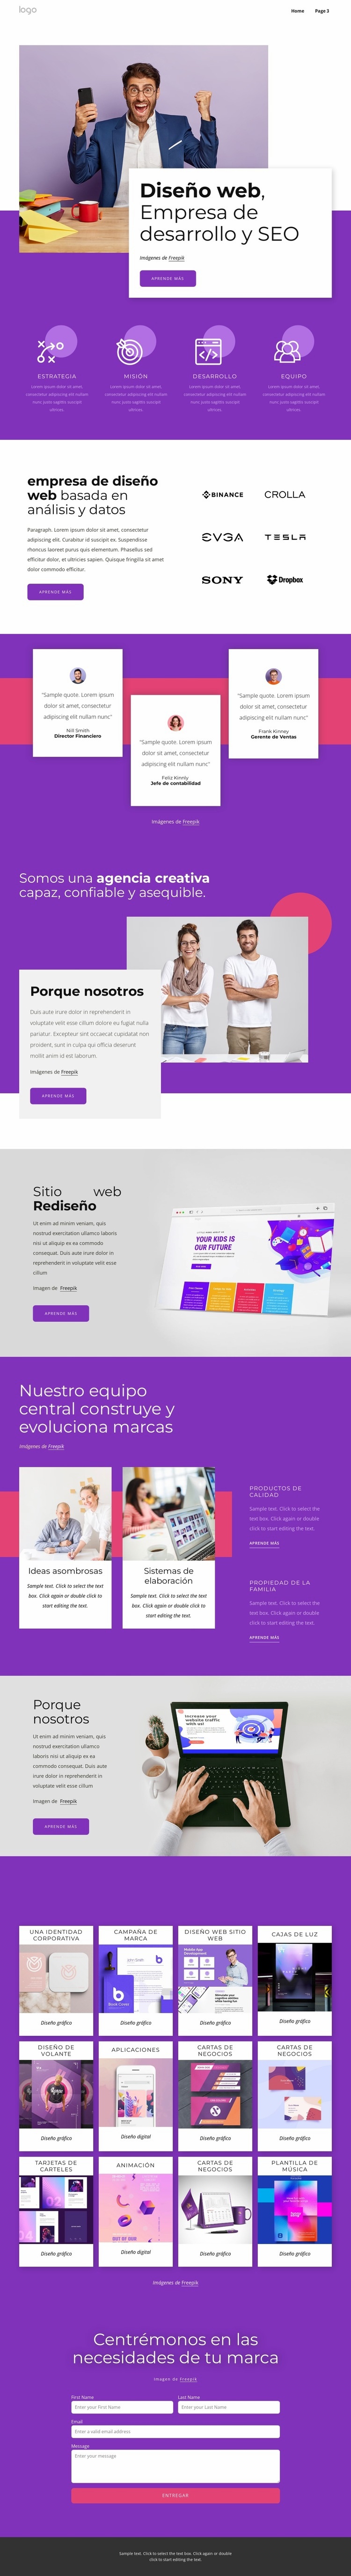 Diseño web, desarrollo y seo. Plantilla HTML5